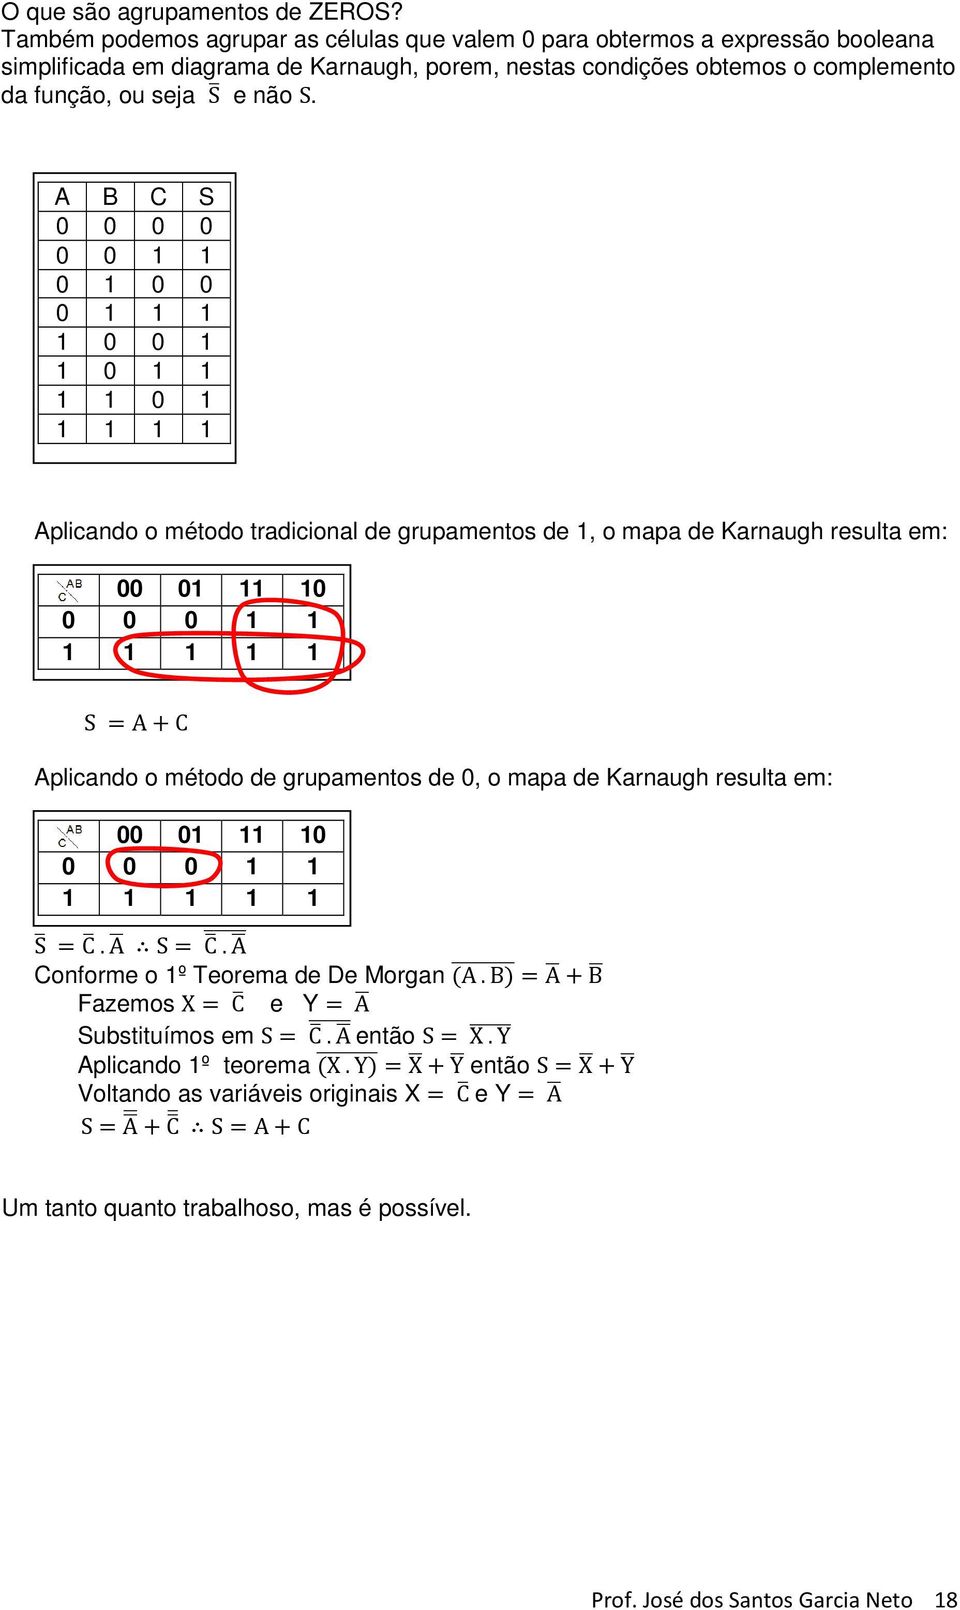 A B C S 0 0 0 0 0 0 1 1 0 1 0 0 0 1 1 1 1 0 0 1 1 0 1 1 1 1 0 1 1 1 1 1 Aplicando o método tradicional de grupamentos de 1, o mapa de Karnaugh resulta em: 0 0 0 1 1 1 1 1 1 1 S A C Aplicando o